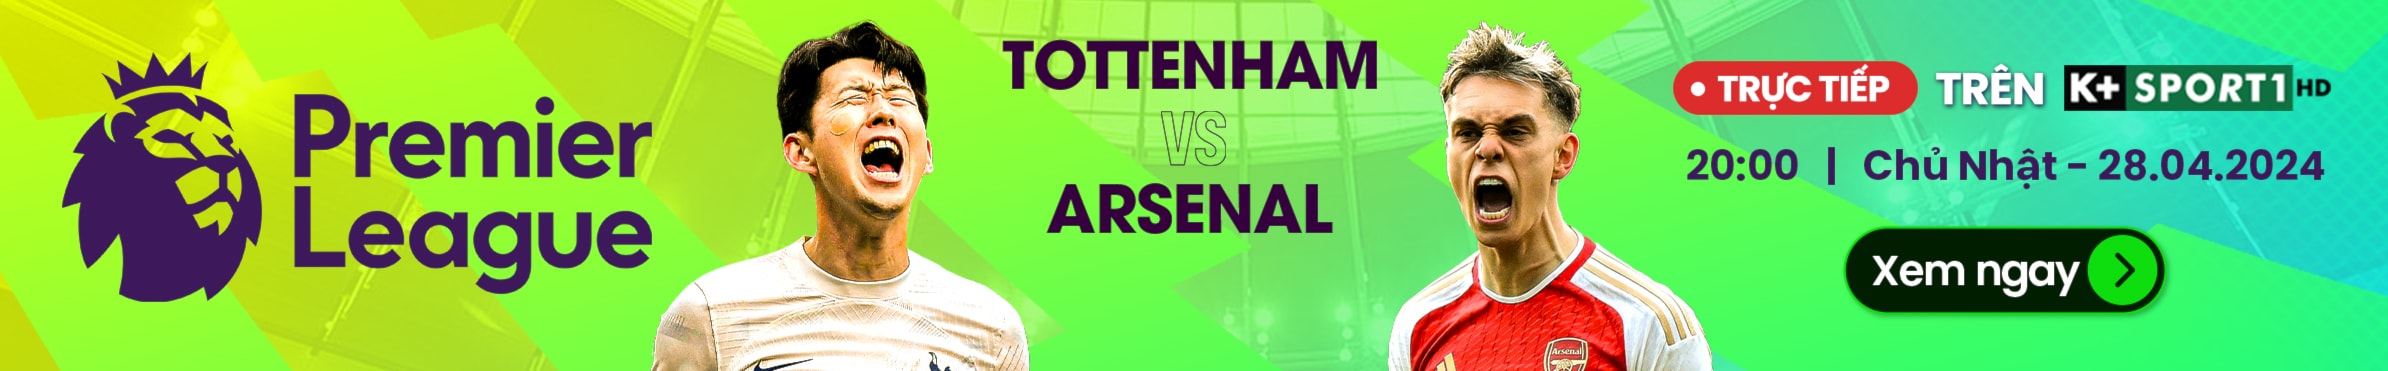 Tottenham vs Arsenal